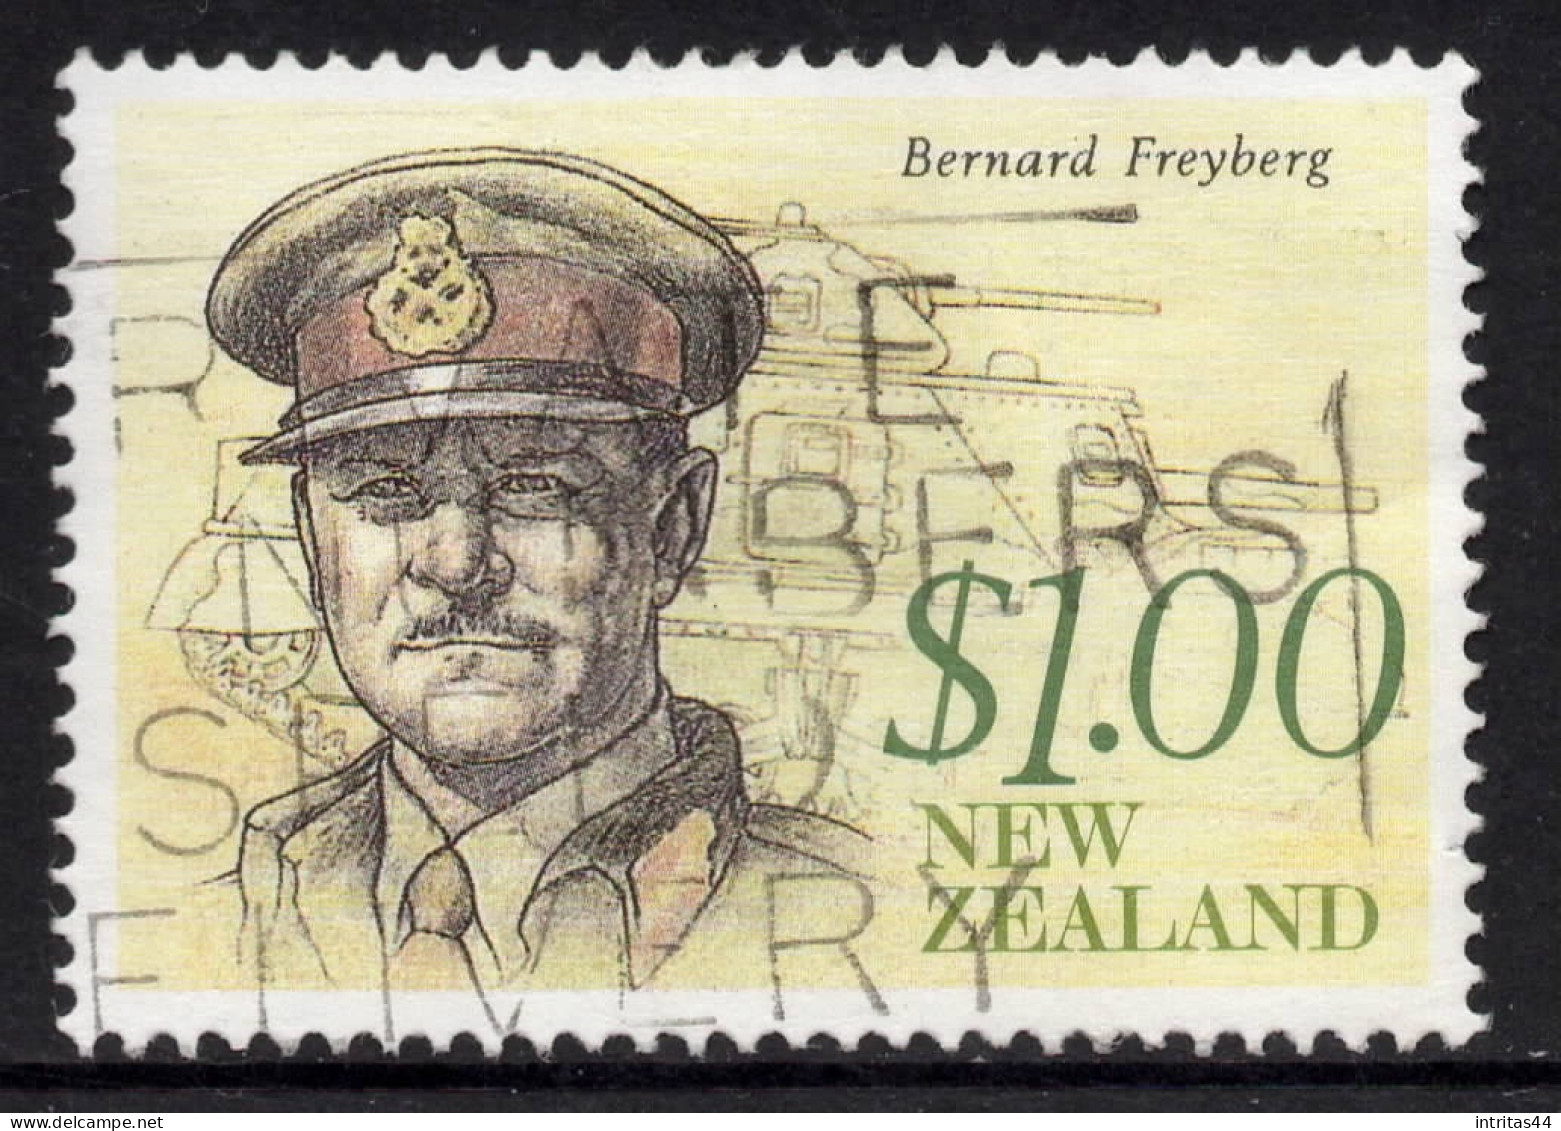 NEW ZEALAND 1990 HERITAGE-THE ACHIEVERS  $1.00 " FREYBERG "  STAMP VFU - Gebruikt